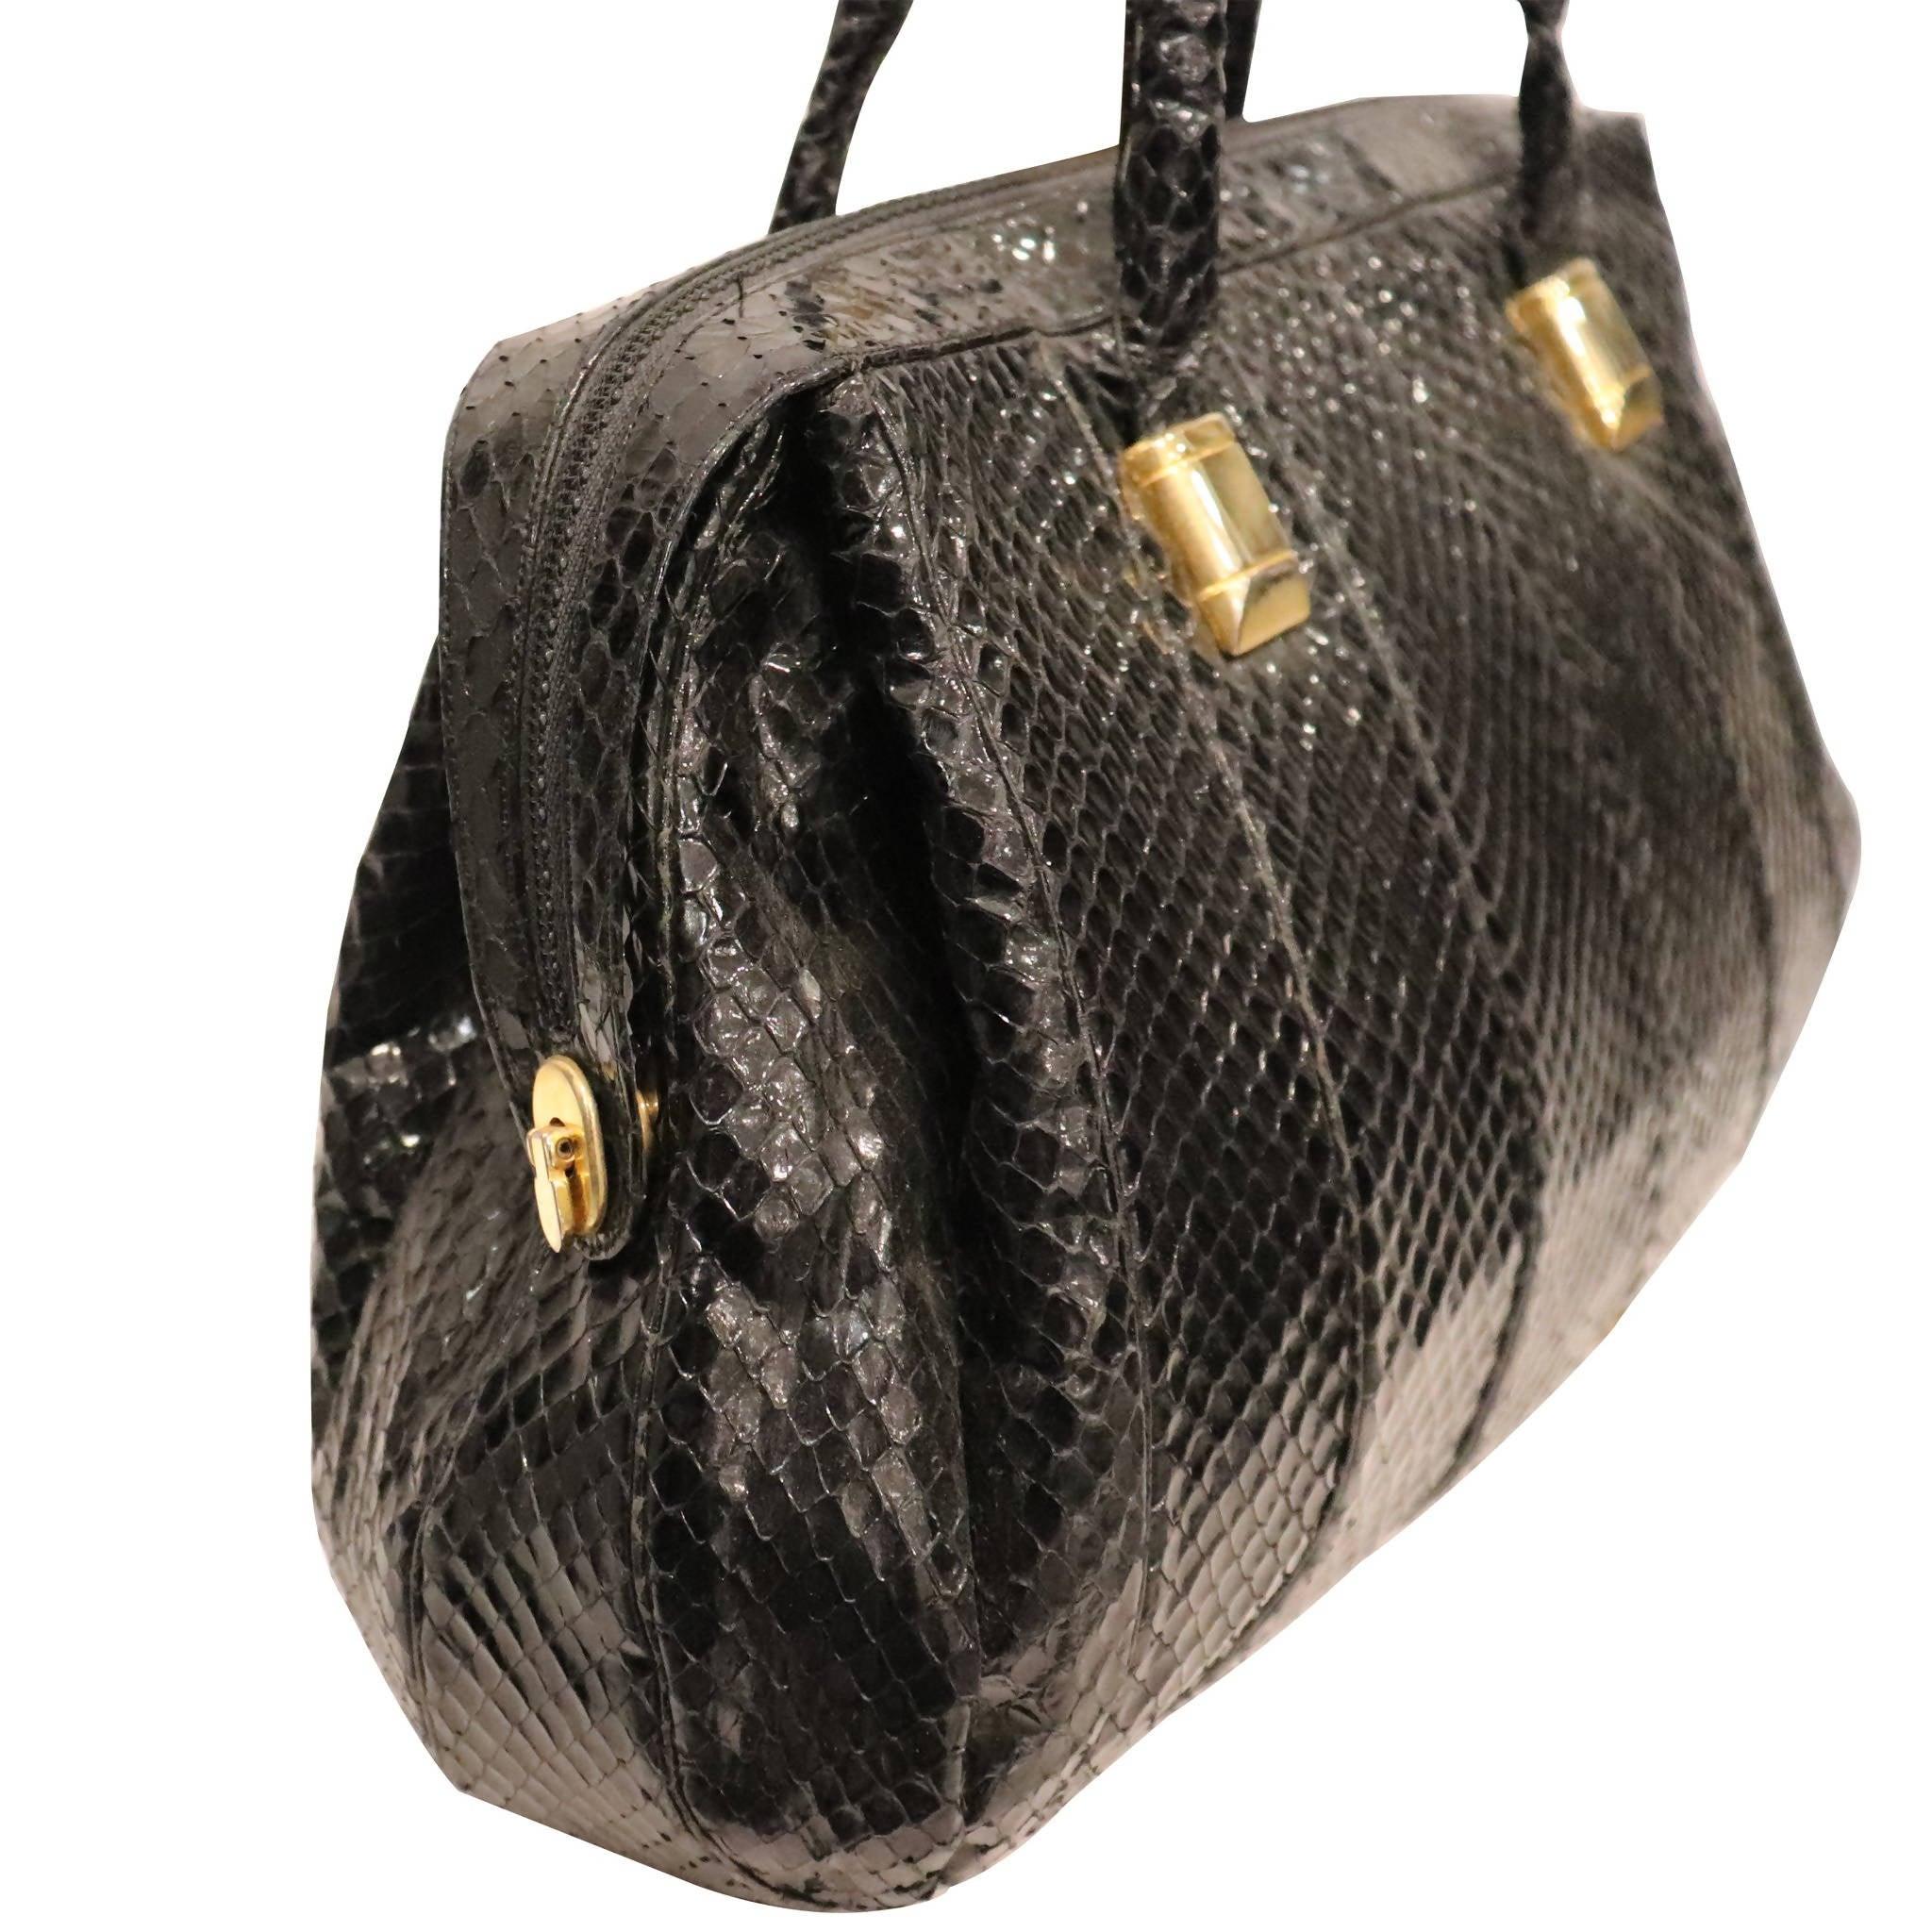 Judith Leiber Snakeskin 1980s Vintage Bags, Handbags & Cases for sale | eBay